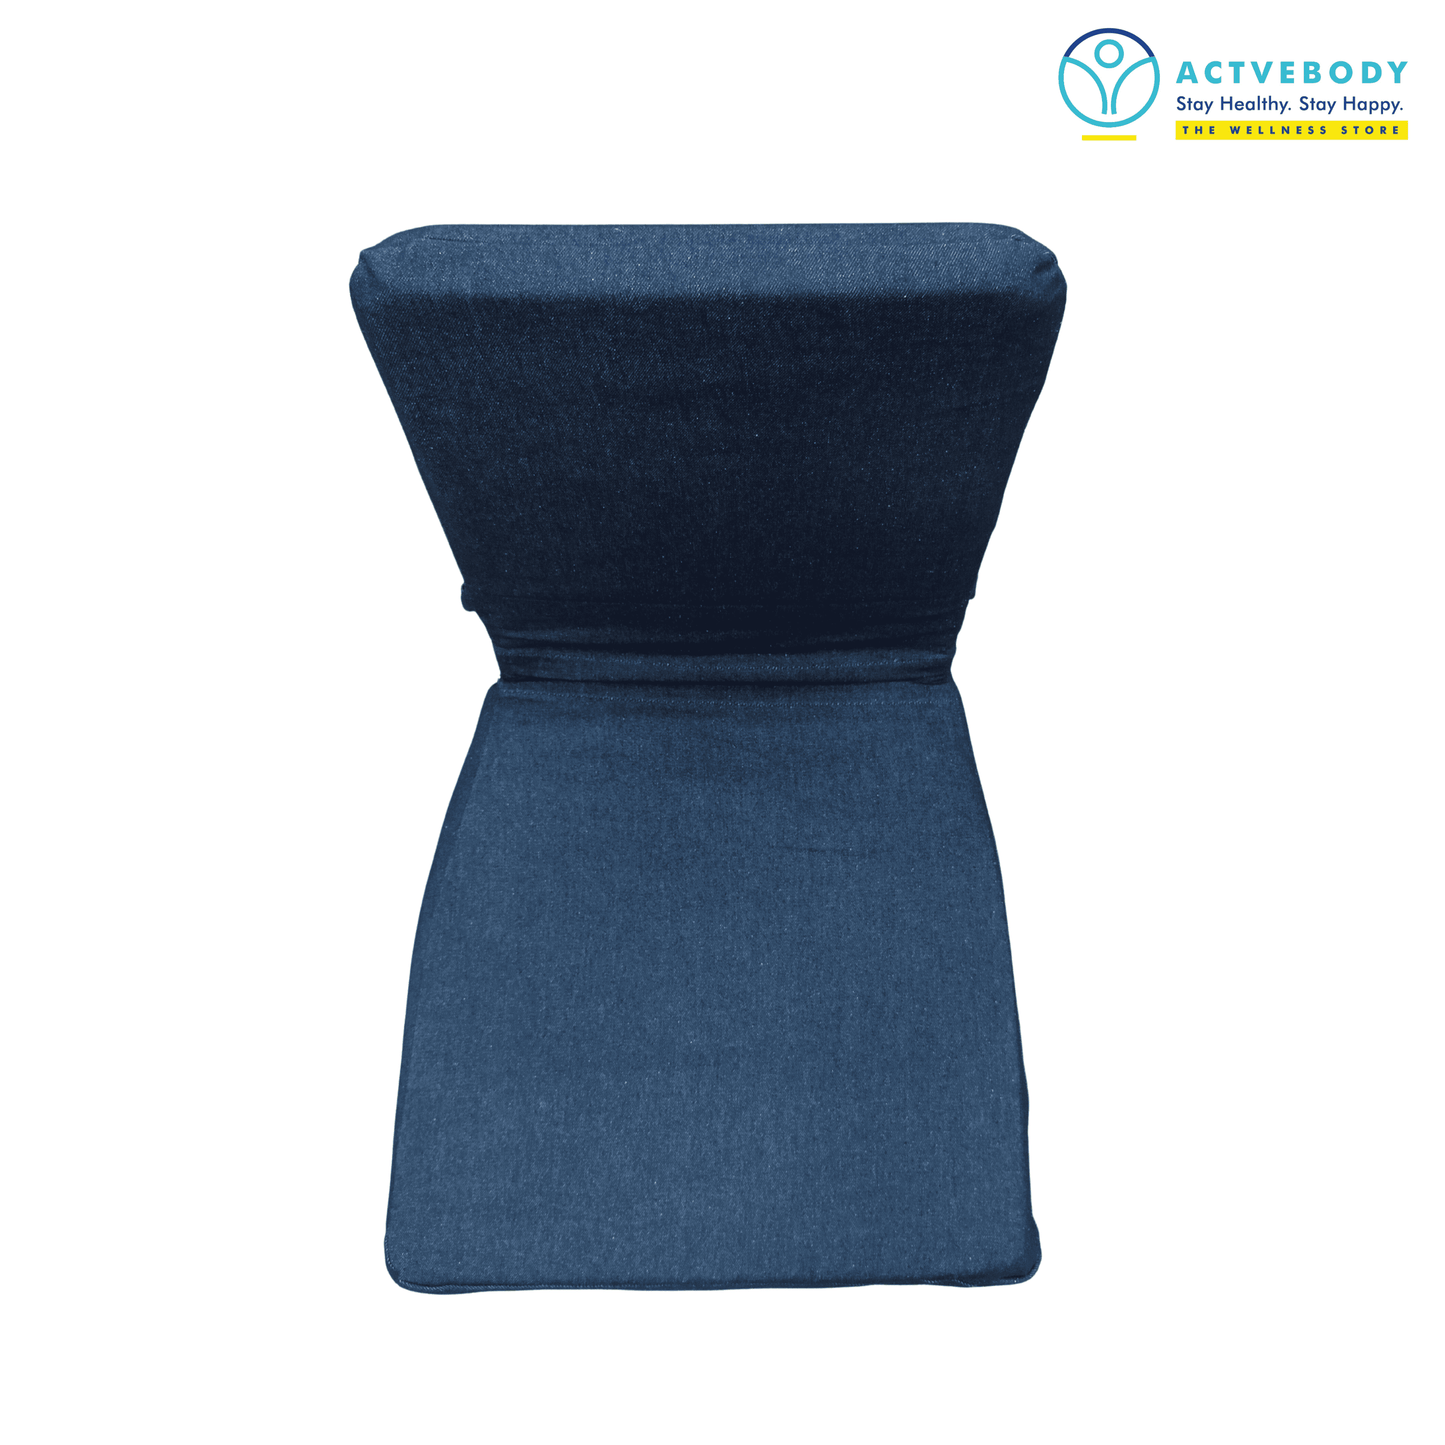 Actvebody Meditation Chair Blue Demin | Actvebody